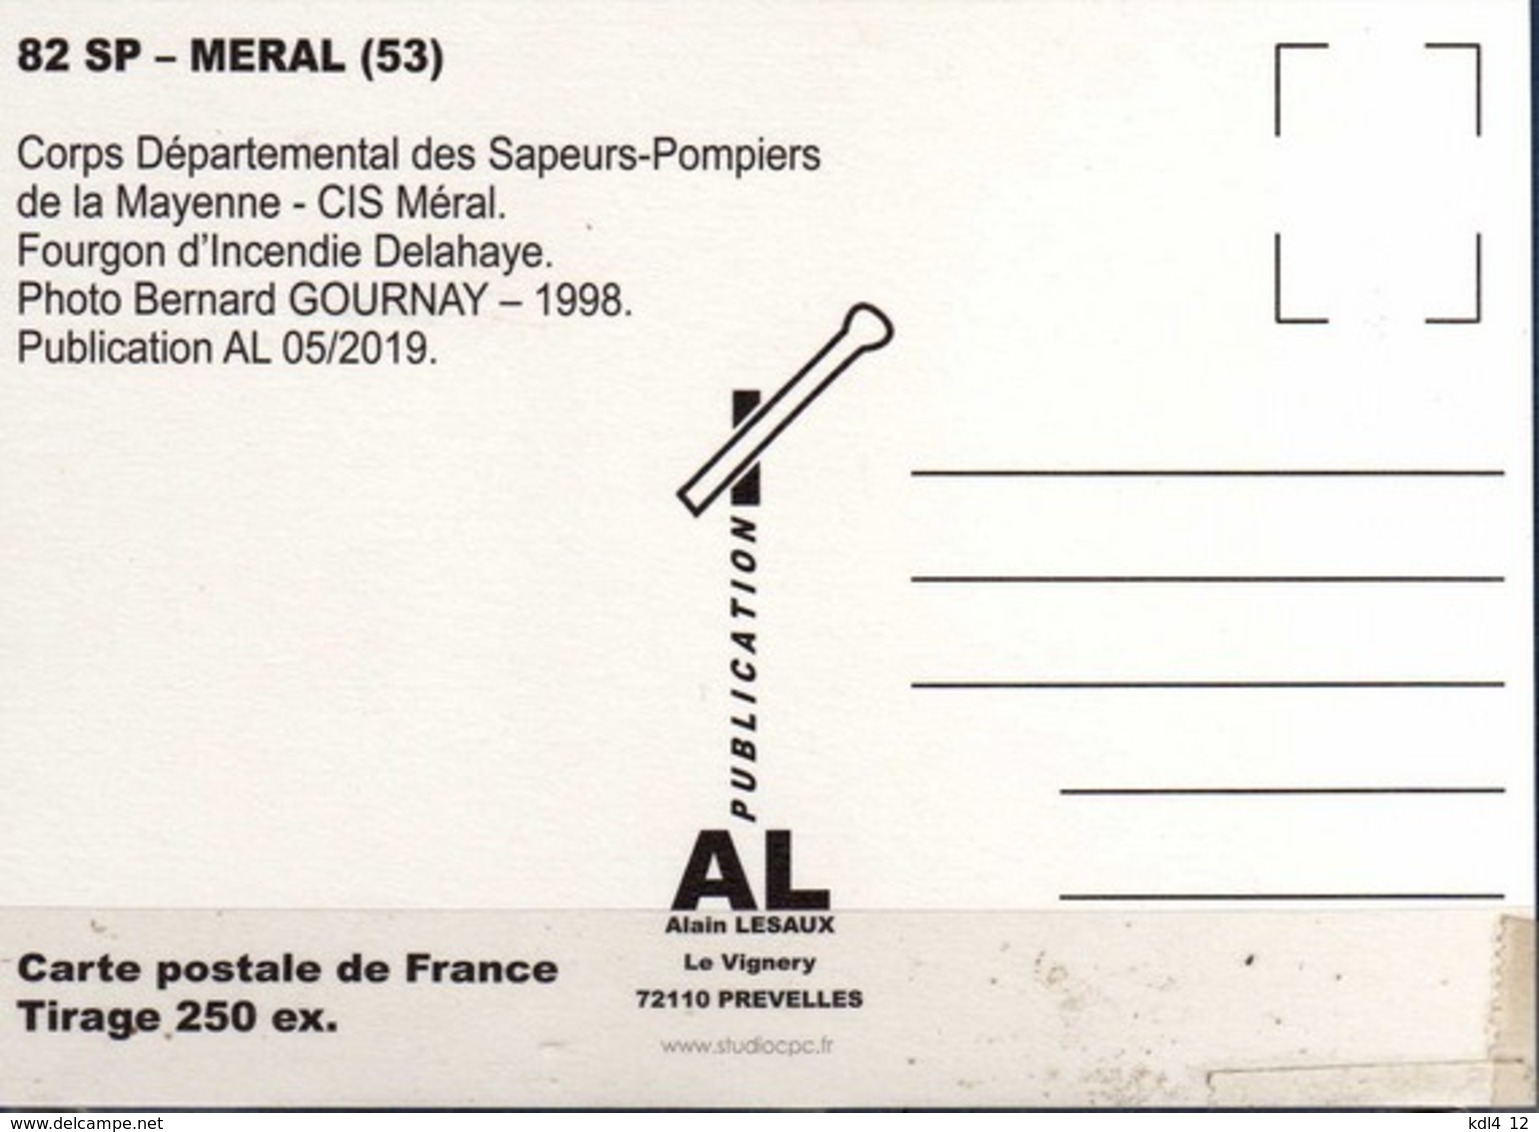 AL - Lot de 6 cartes postales modernes - Véhicules des Sapeurs-Pompiers de France - 80 SP à 85 SP